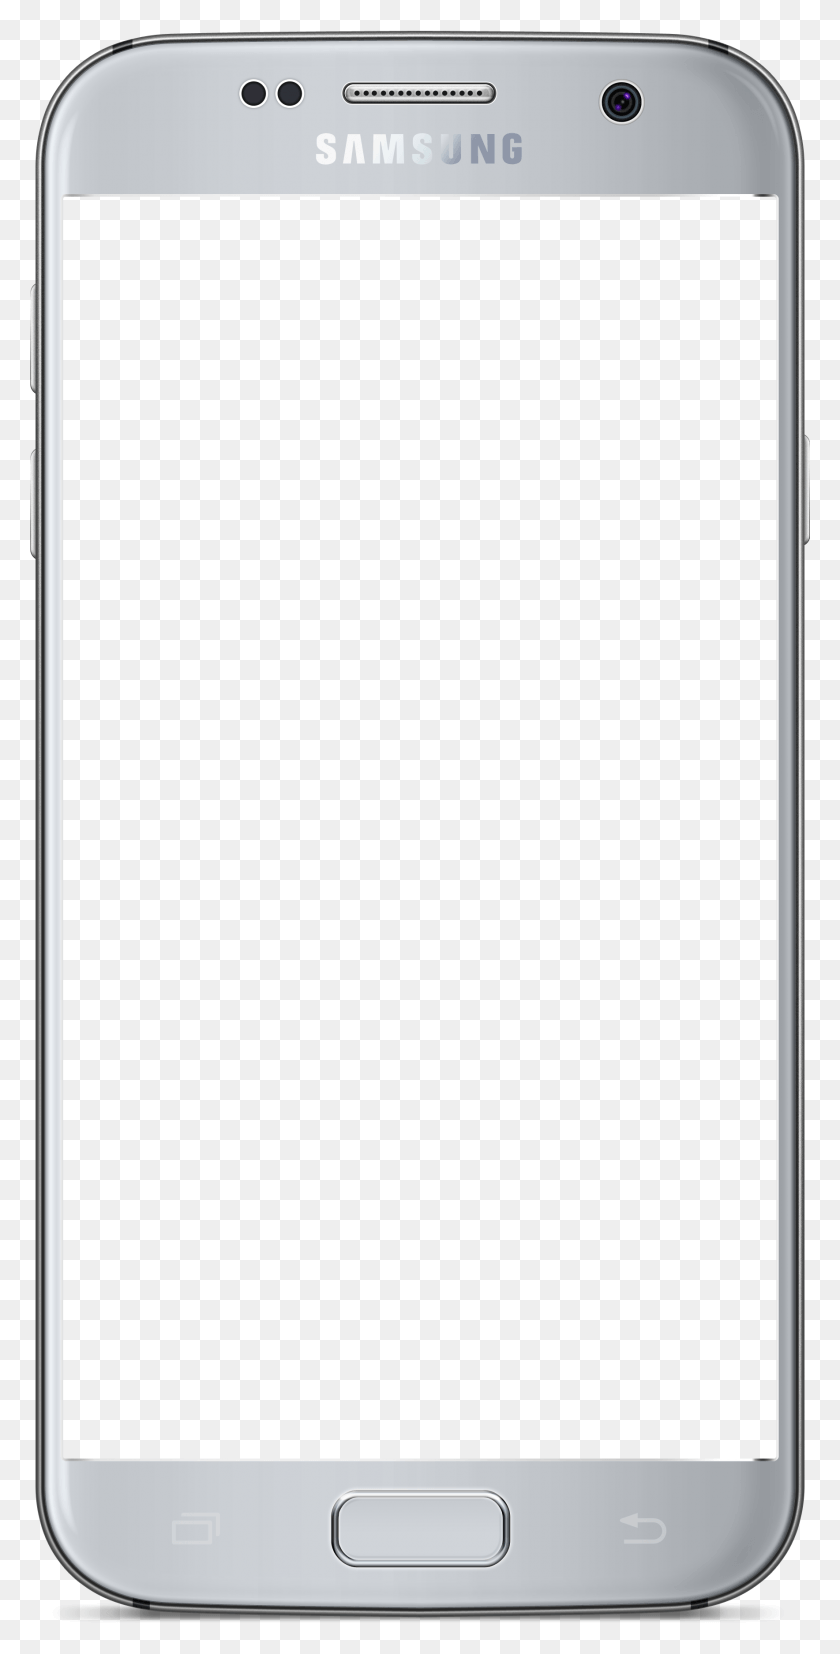 1768x3615 Celular Iphone Samsung Celular Tumblr, Mobile Phone, Phone, Electronics HD PNG Download